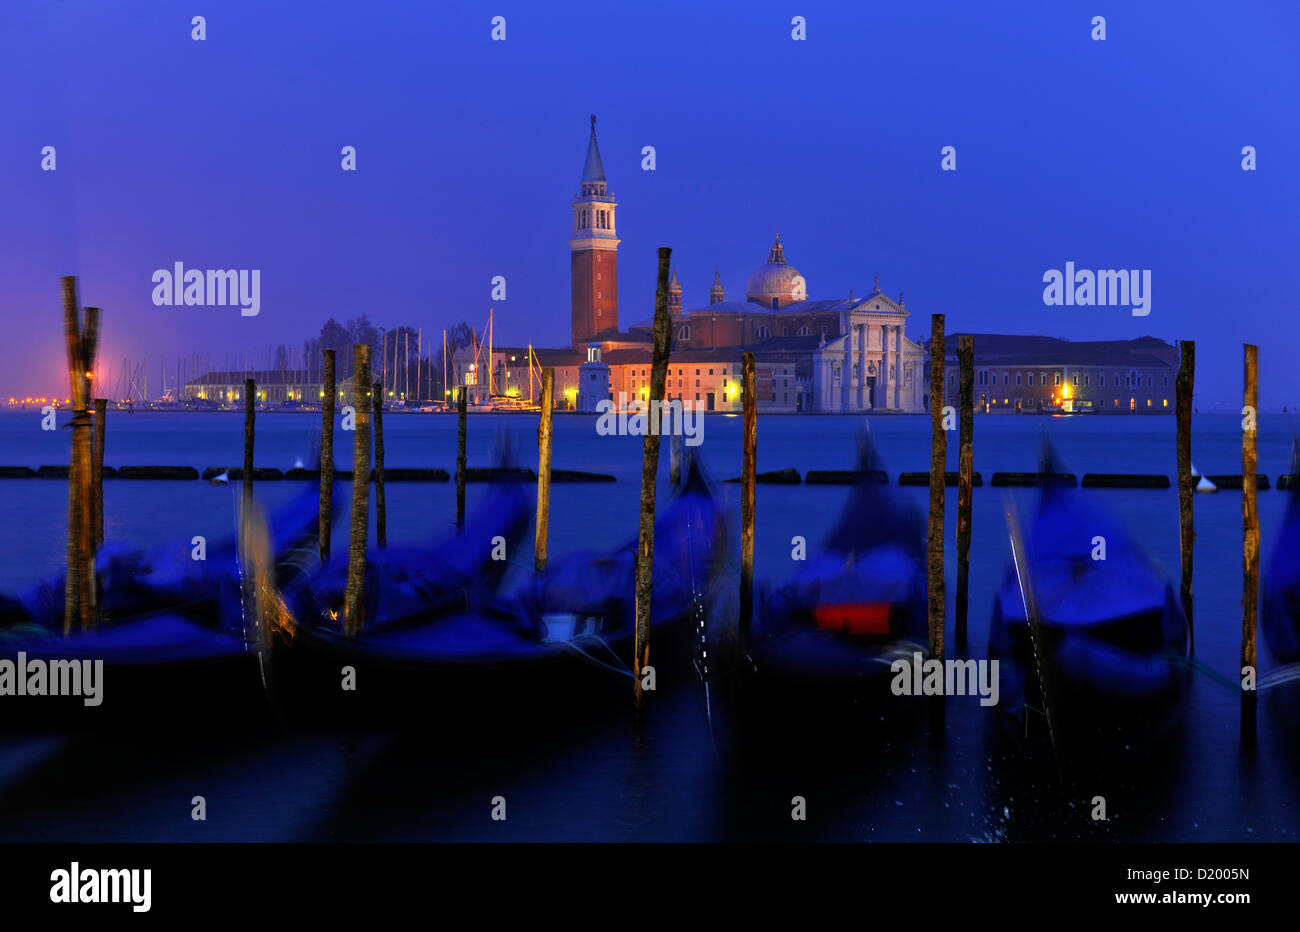 Las góndolas, Piazzetta, San Giorgio Maggiore, Venecia, Italia Foto de stock